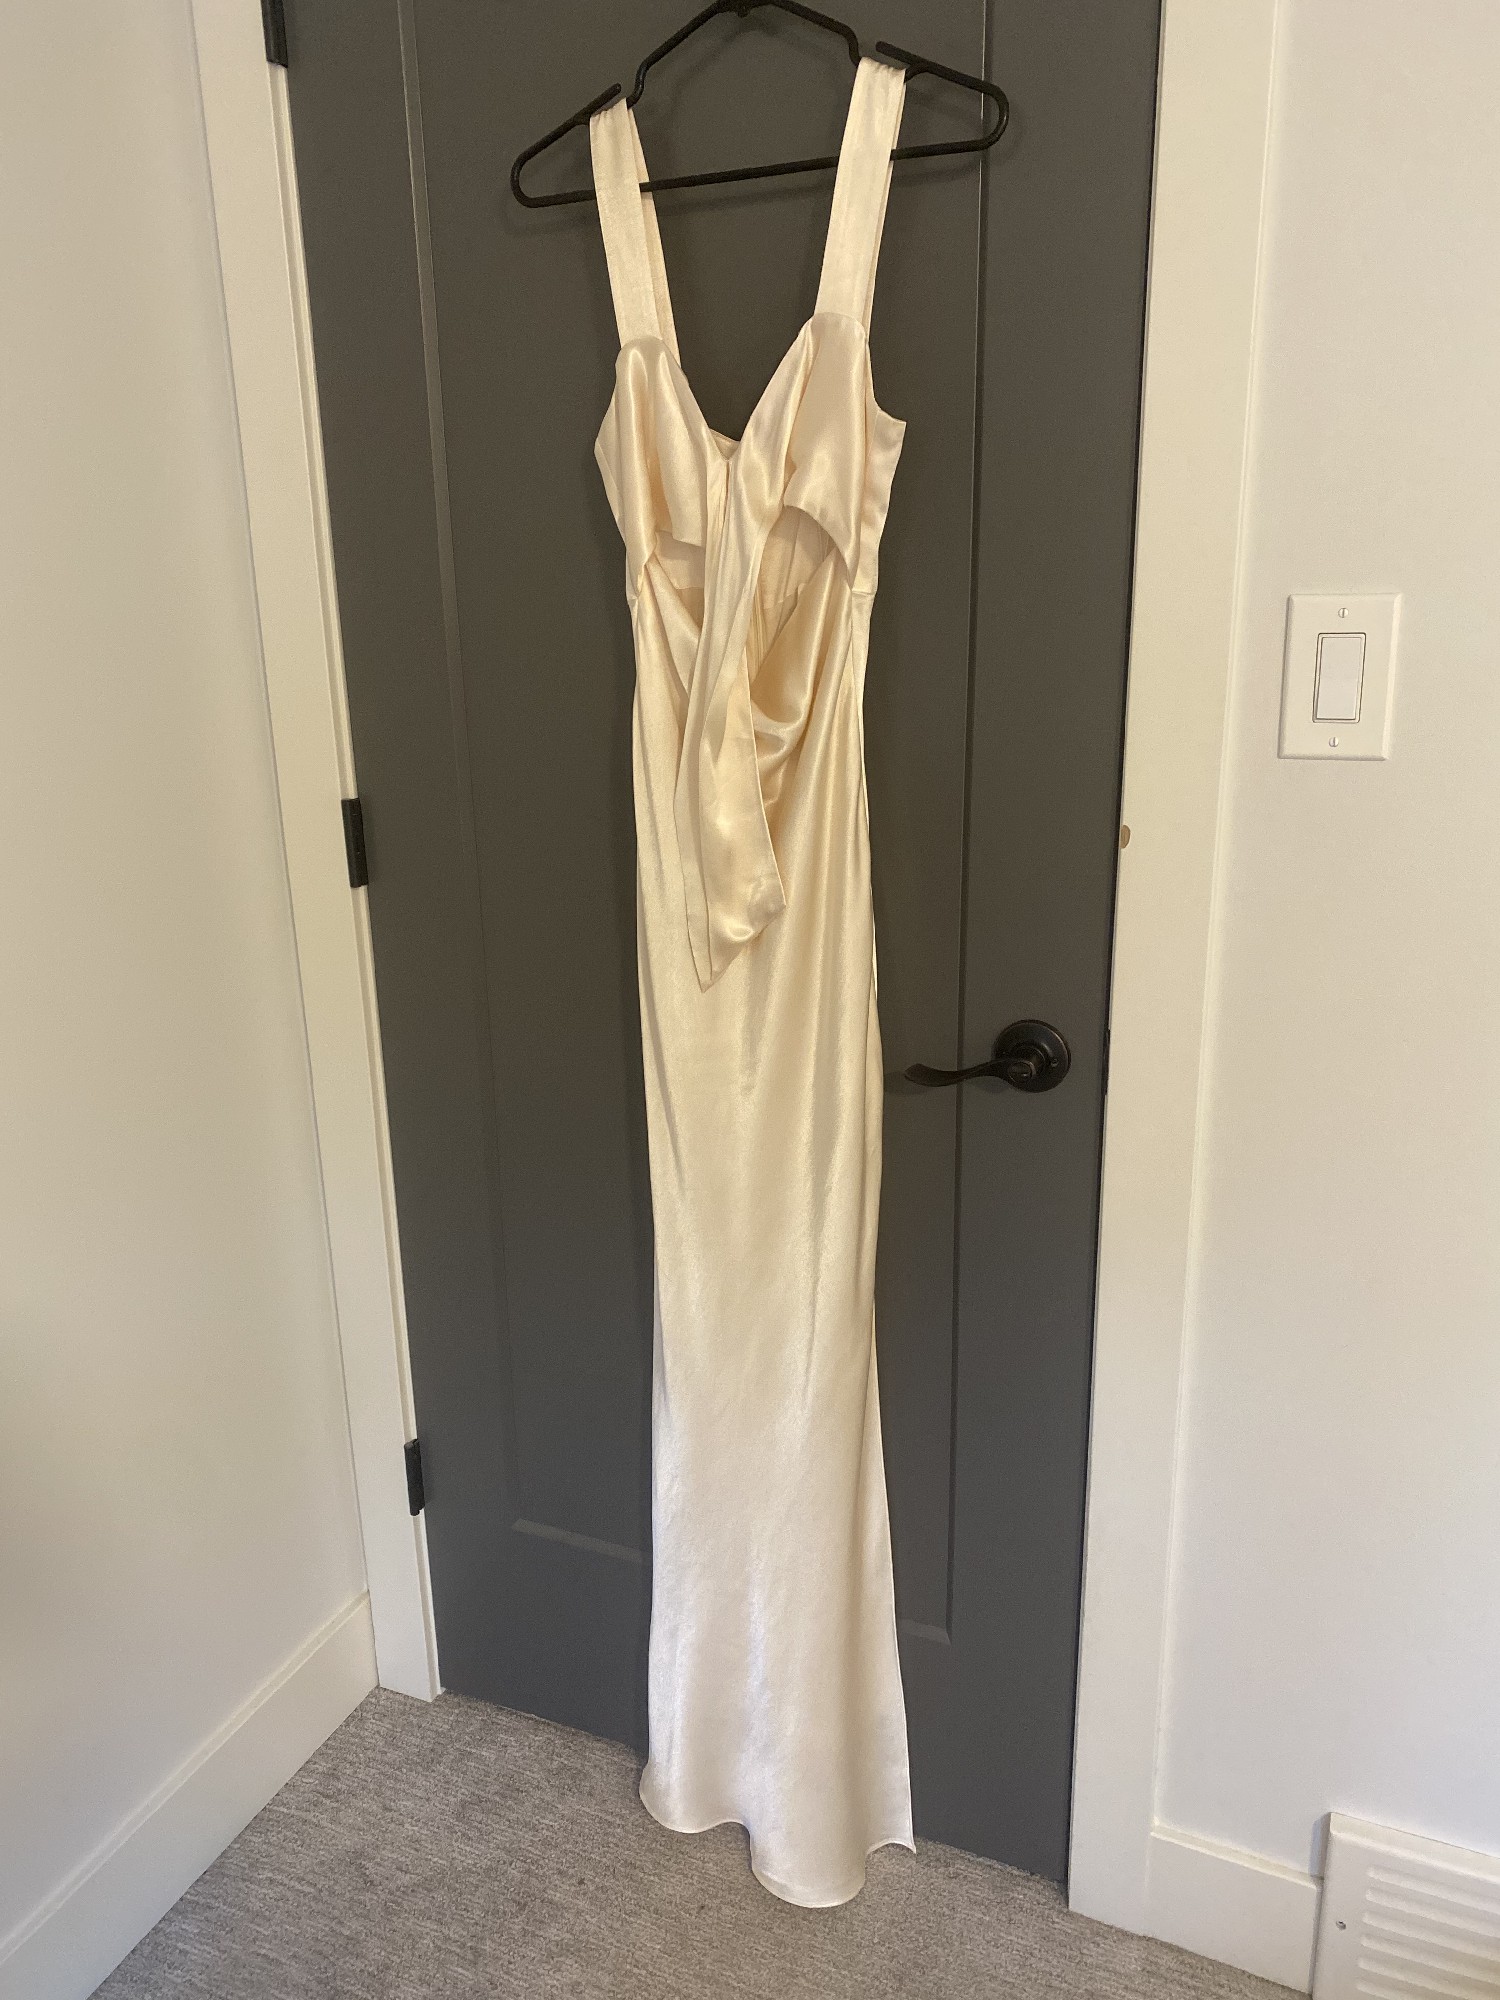 Shona Joy La Lune Bow Tie Maxi Dress (BRAND NEW) New Wedding Dress Save ...